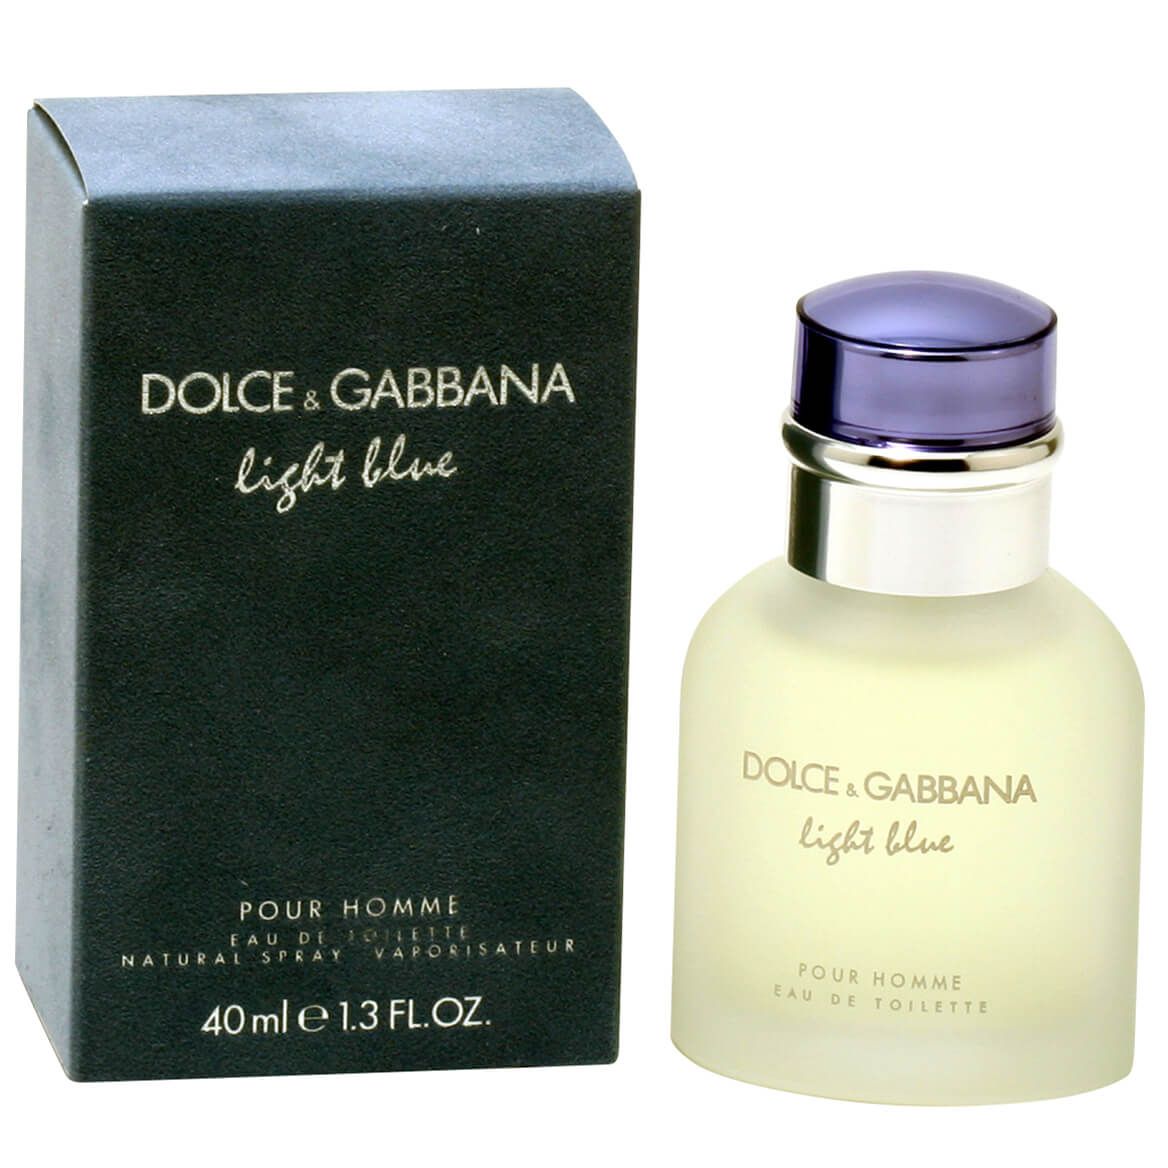 Dolce & Gabbana Light Blue for Men EDT, 1.3 fl. oz. + '-' + 377148